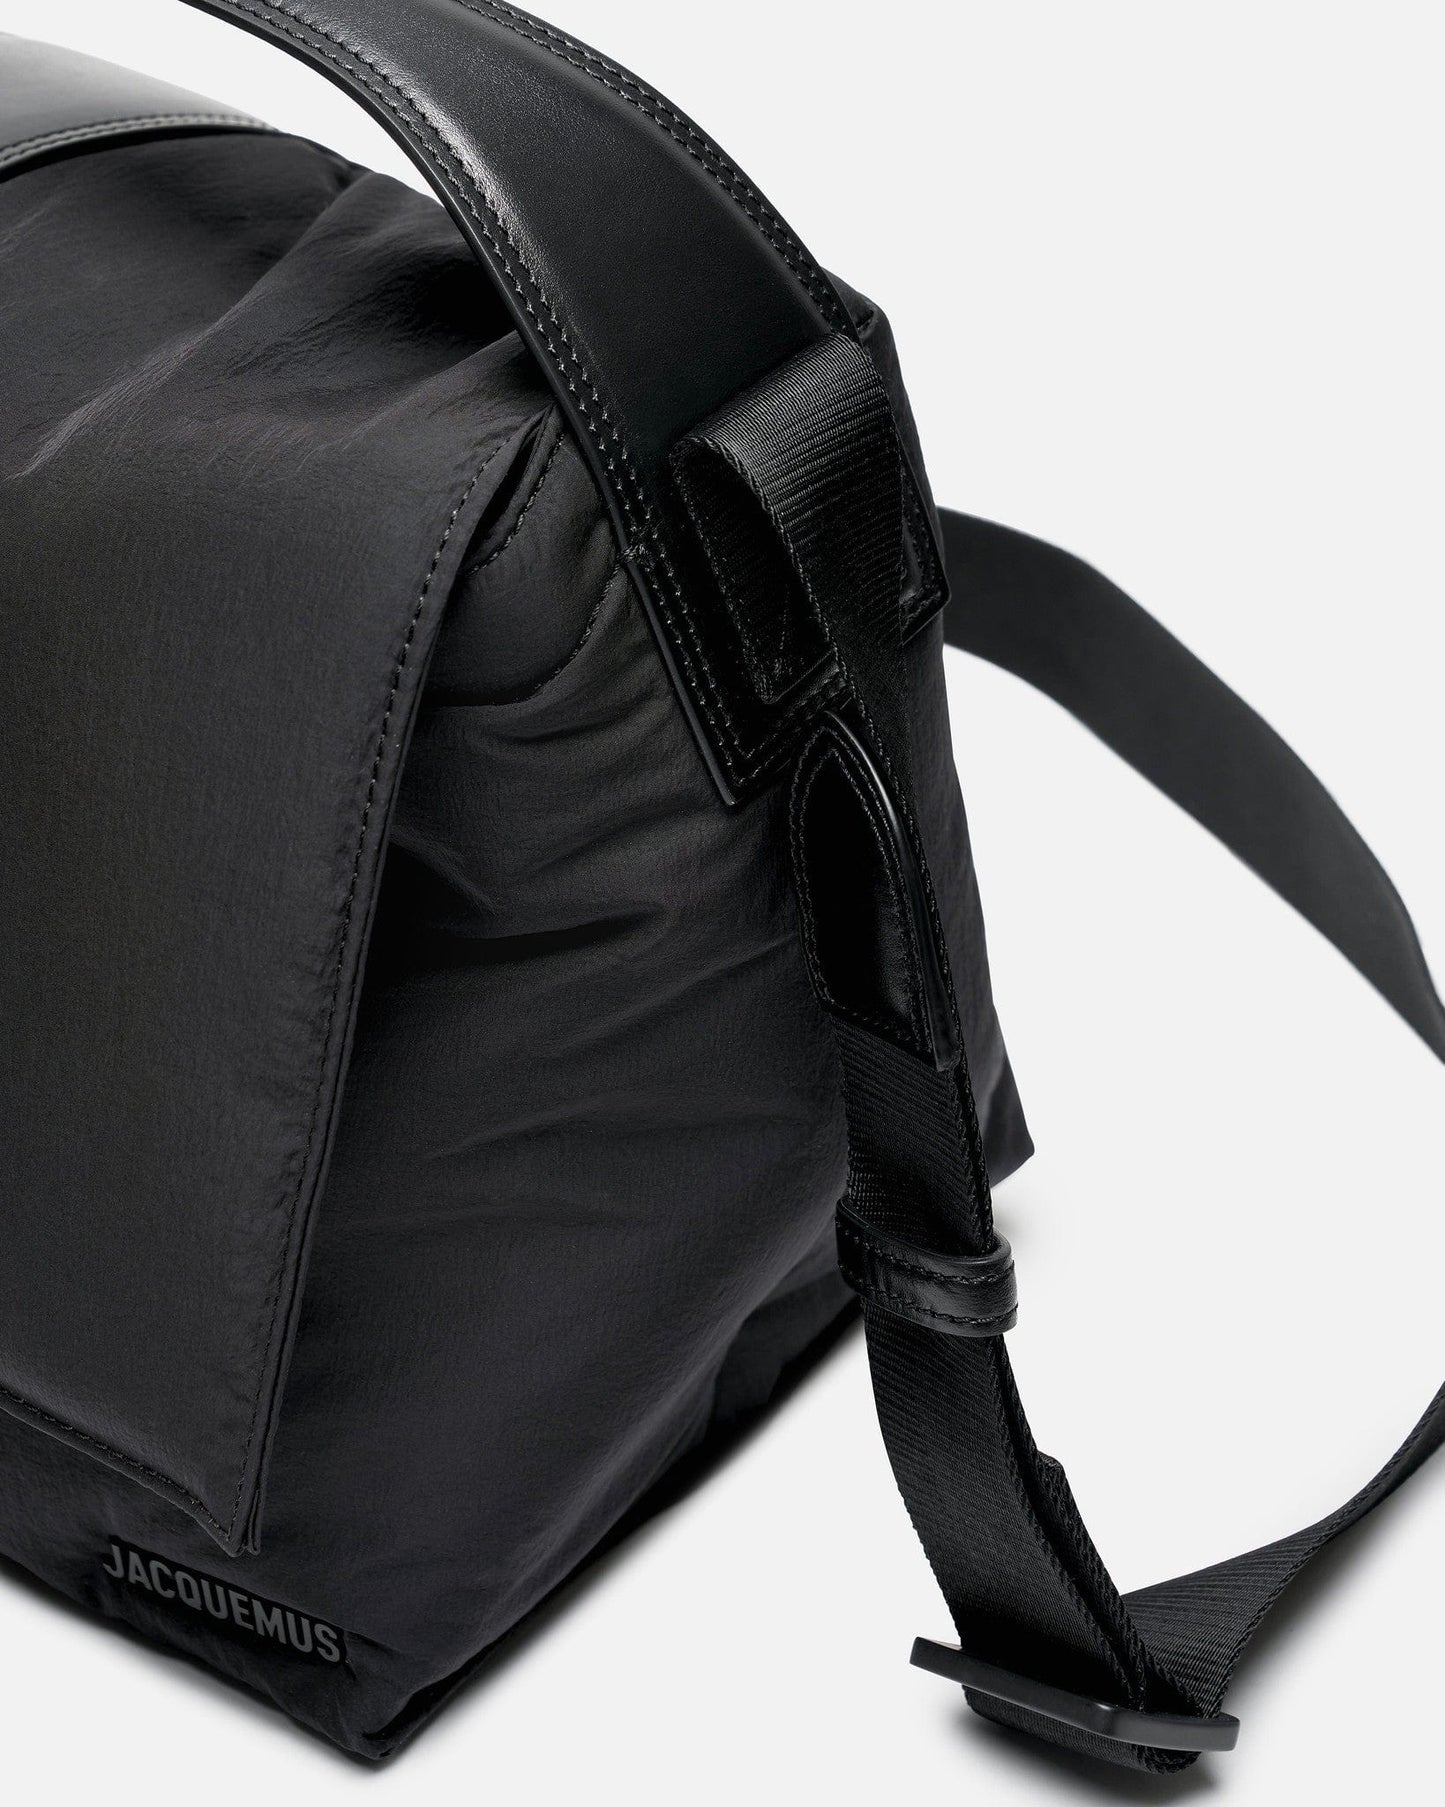 Jacquemus Men's Bags O/S Le Messenger Bambino in Black